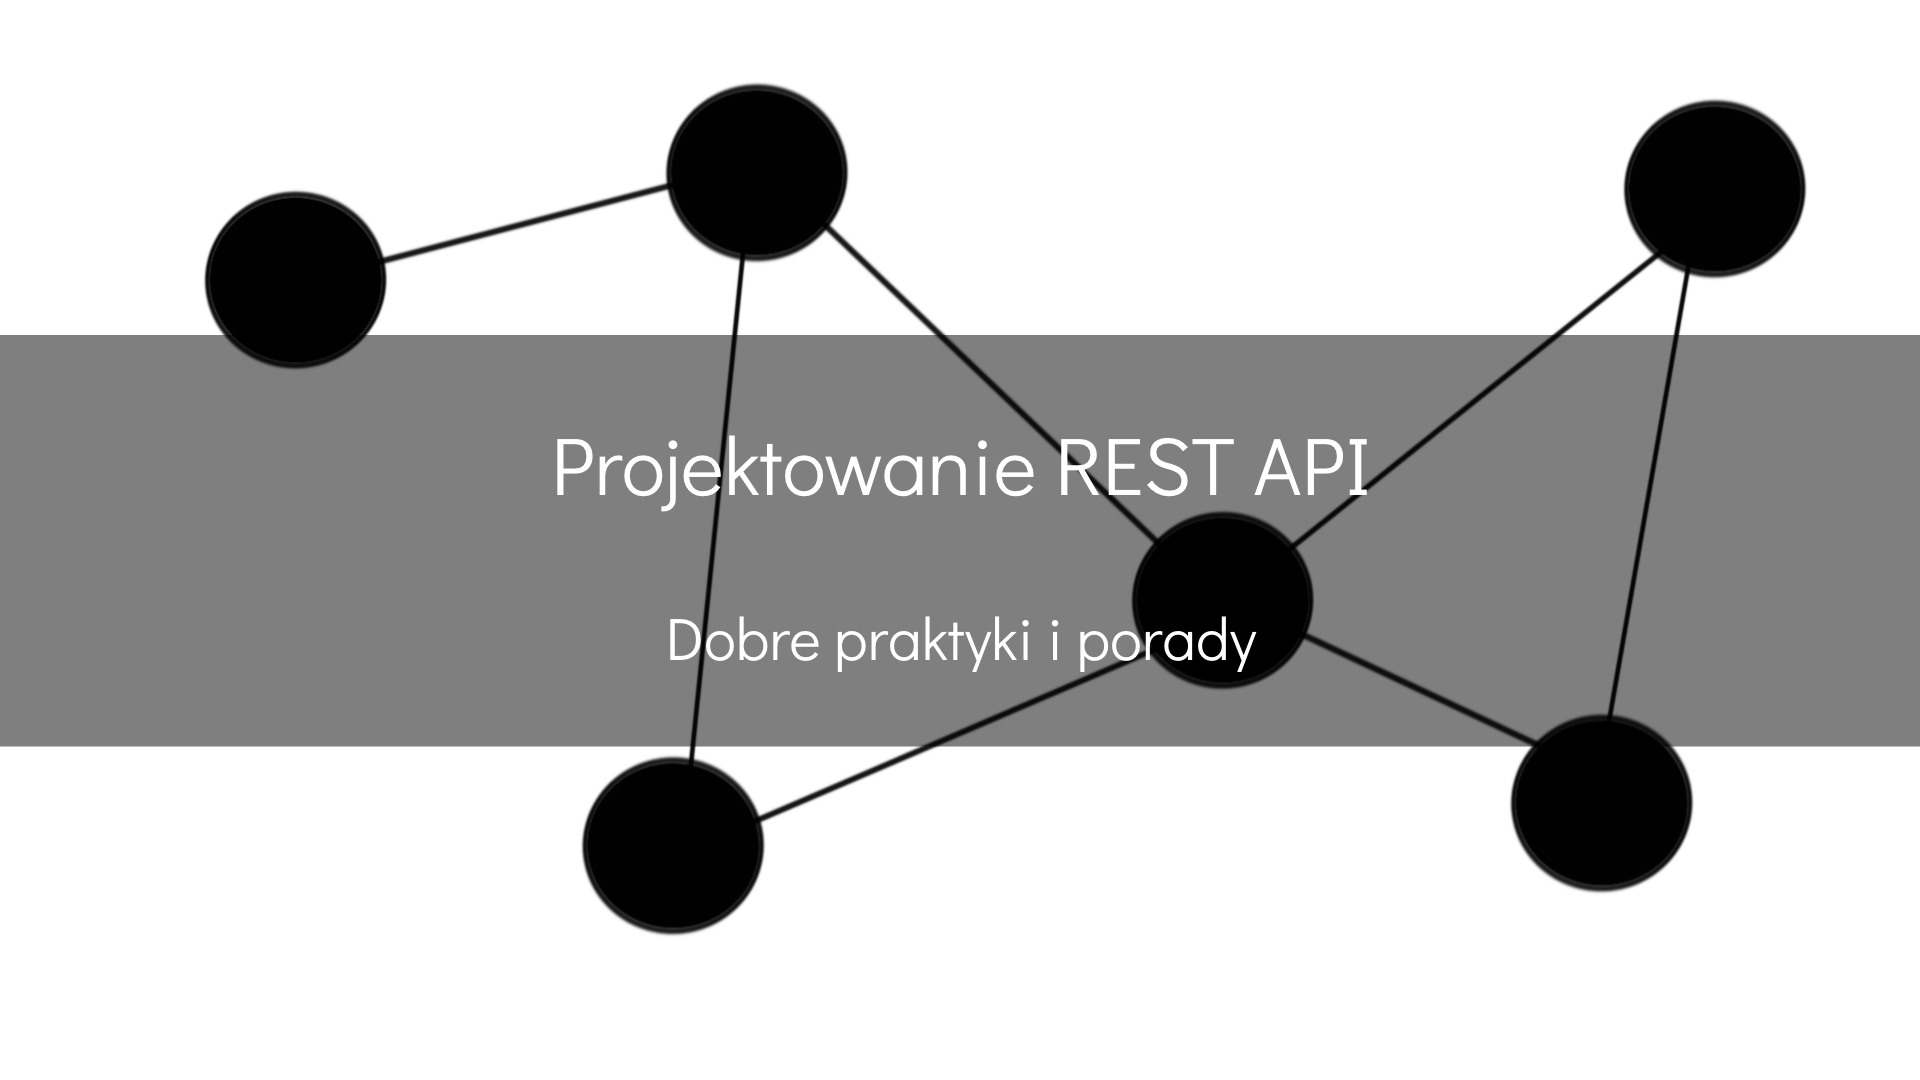 Projektowanie REST API